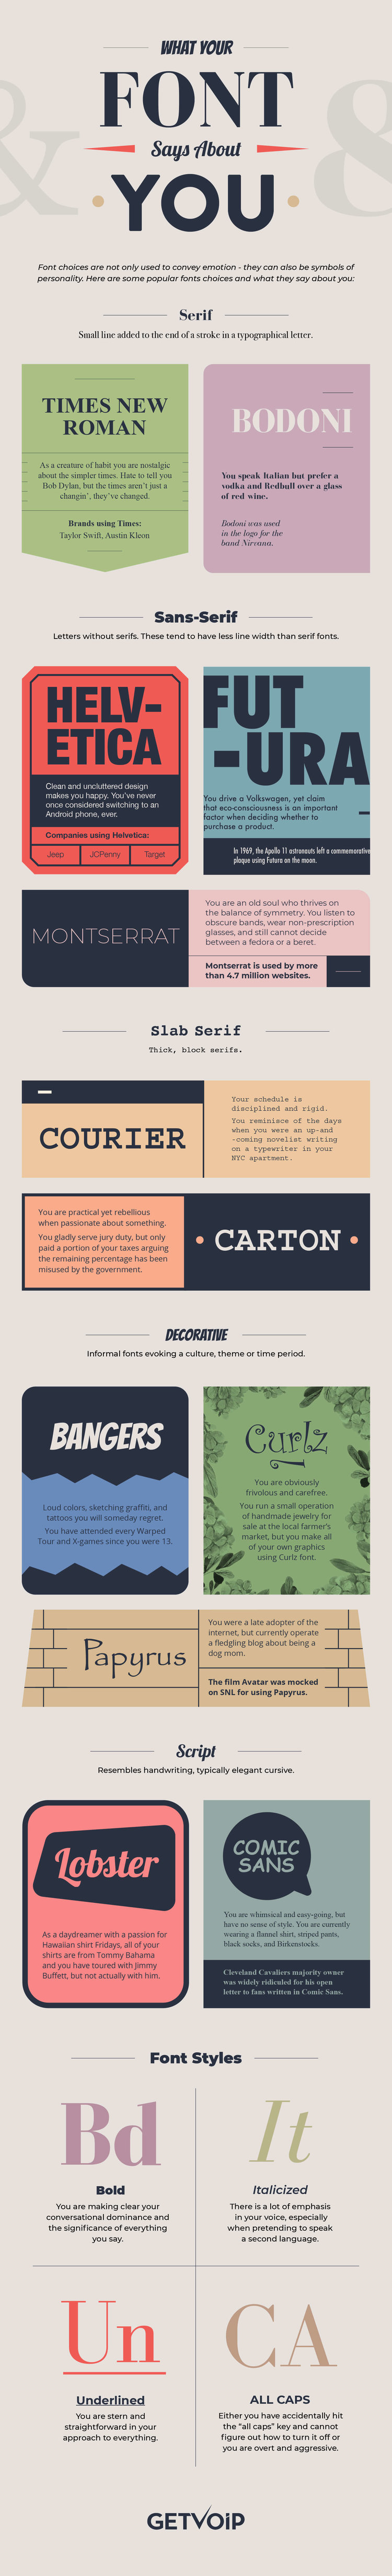 Serif vs. Sans: The Final Battle — Cool Infographics